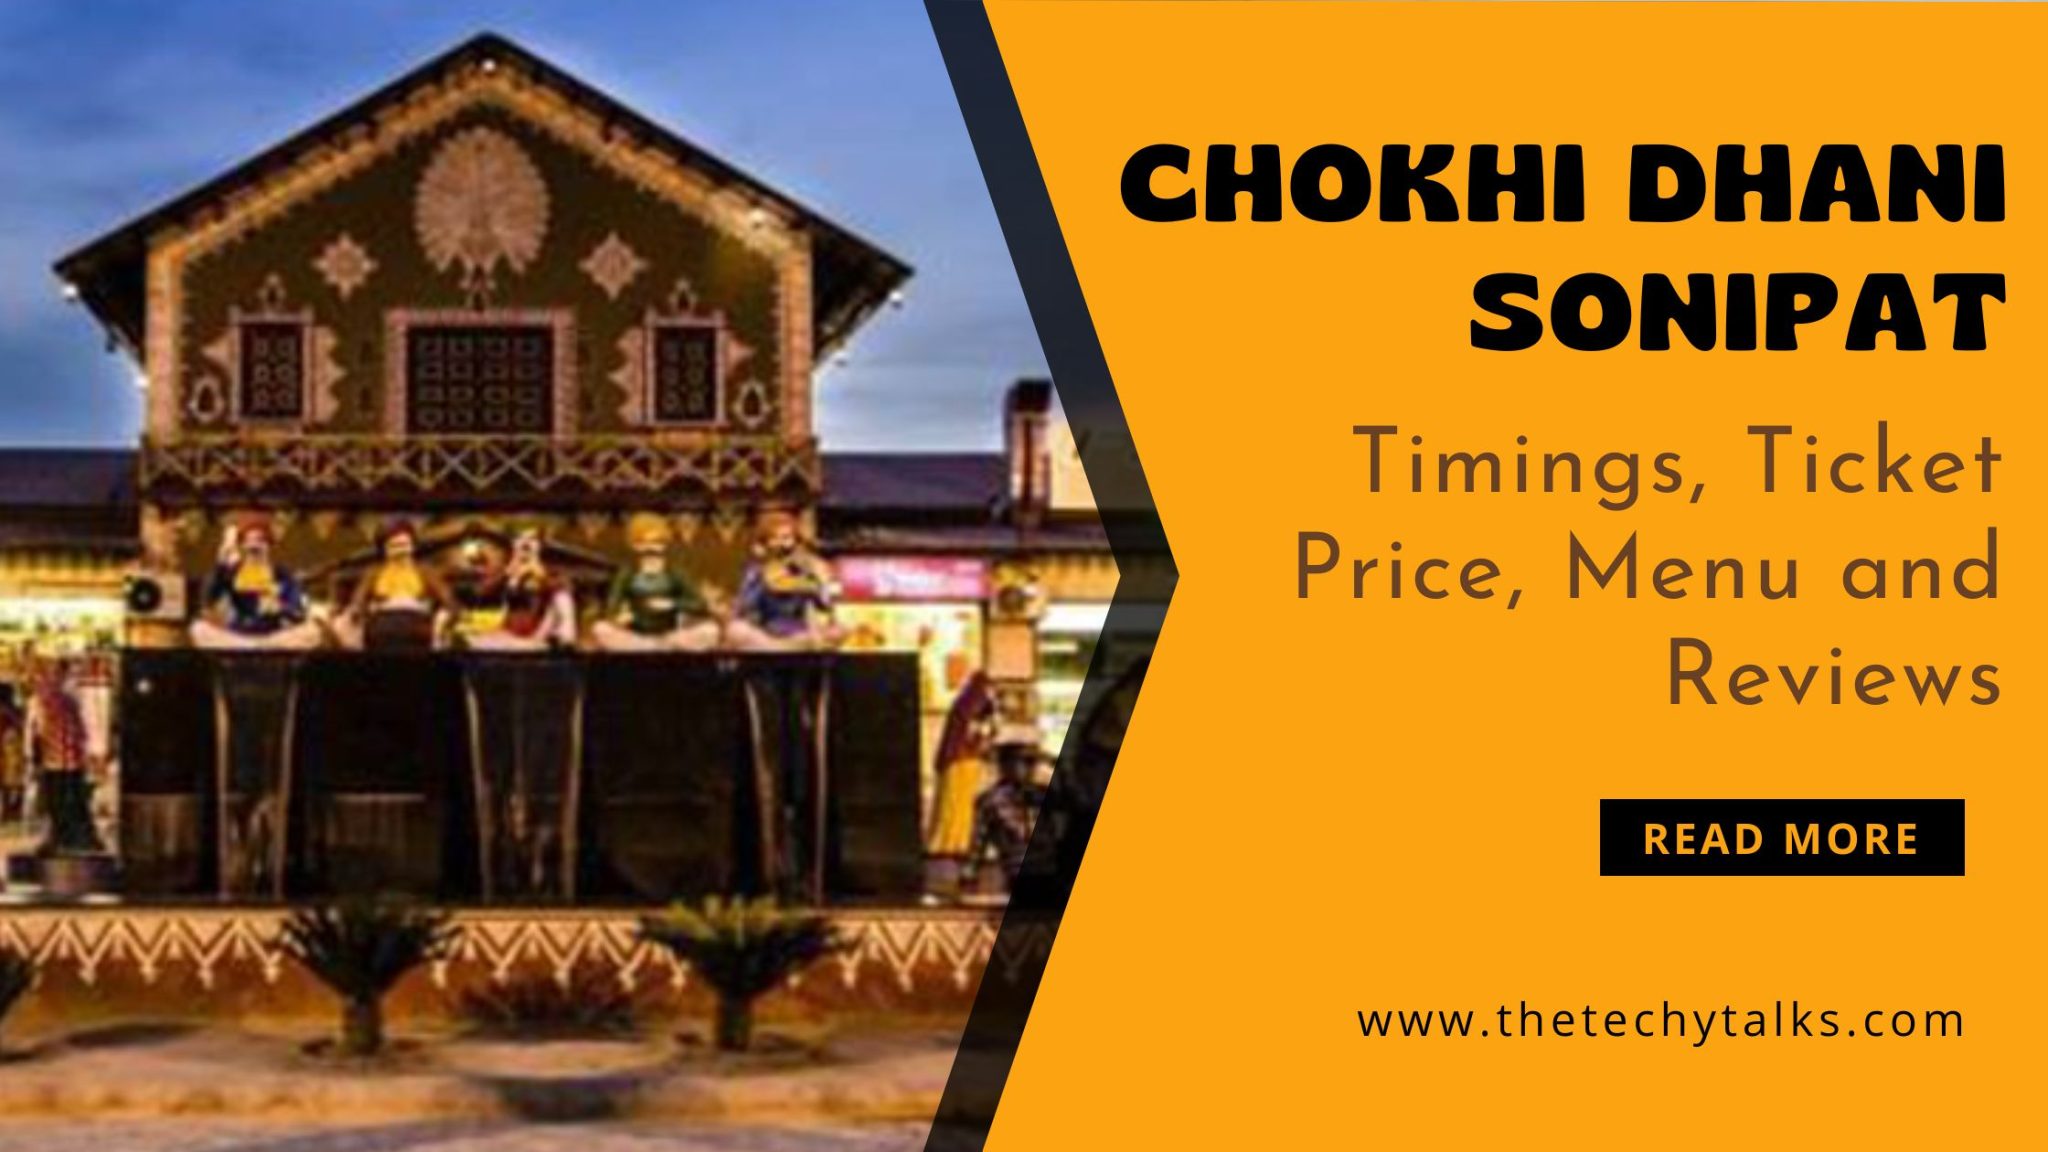 Chokhi Dhani Sonipat: Timings, Ticket Price, Menu and Reviews